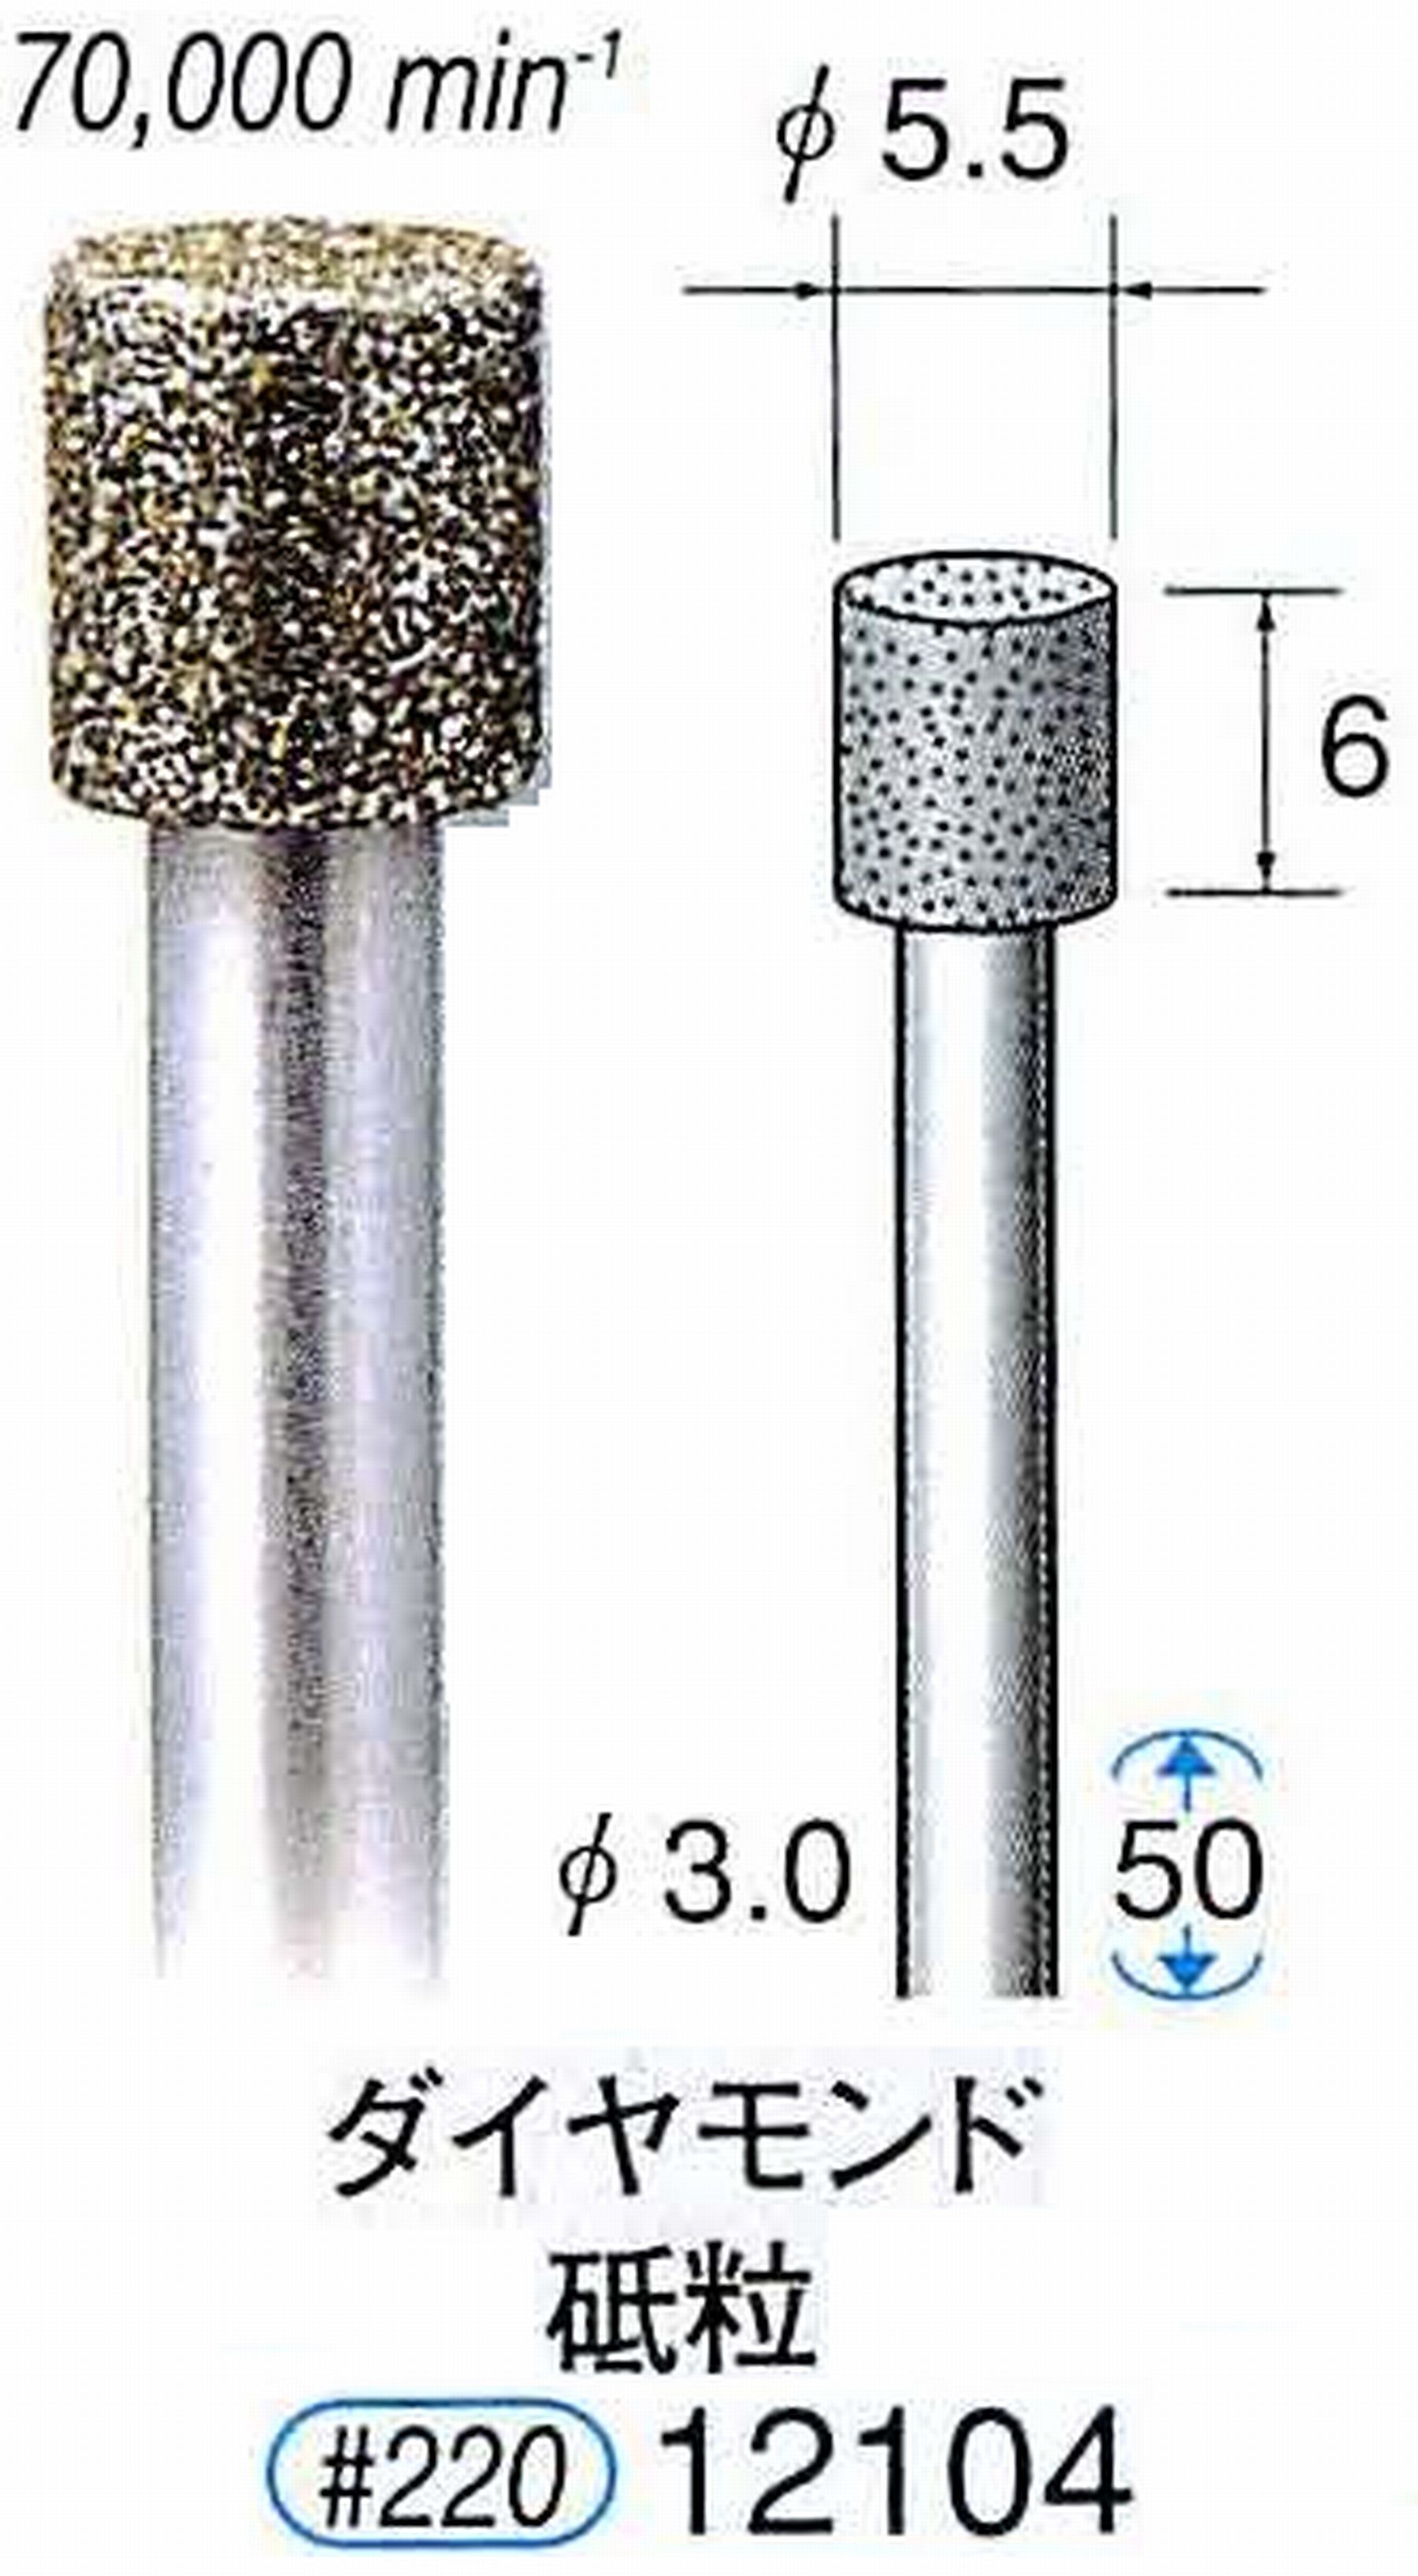 ナカニシ/NAKANISHI 電着ダイヤモンド ダイヤモンド砥粒 軸径(シャンク)φ3.0mm 12104